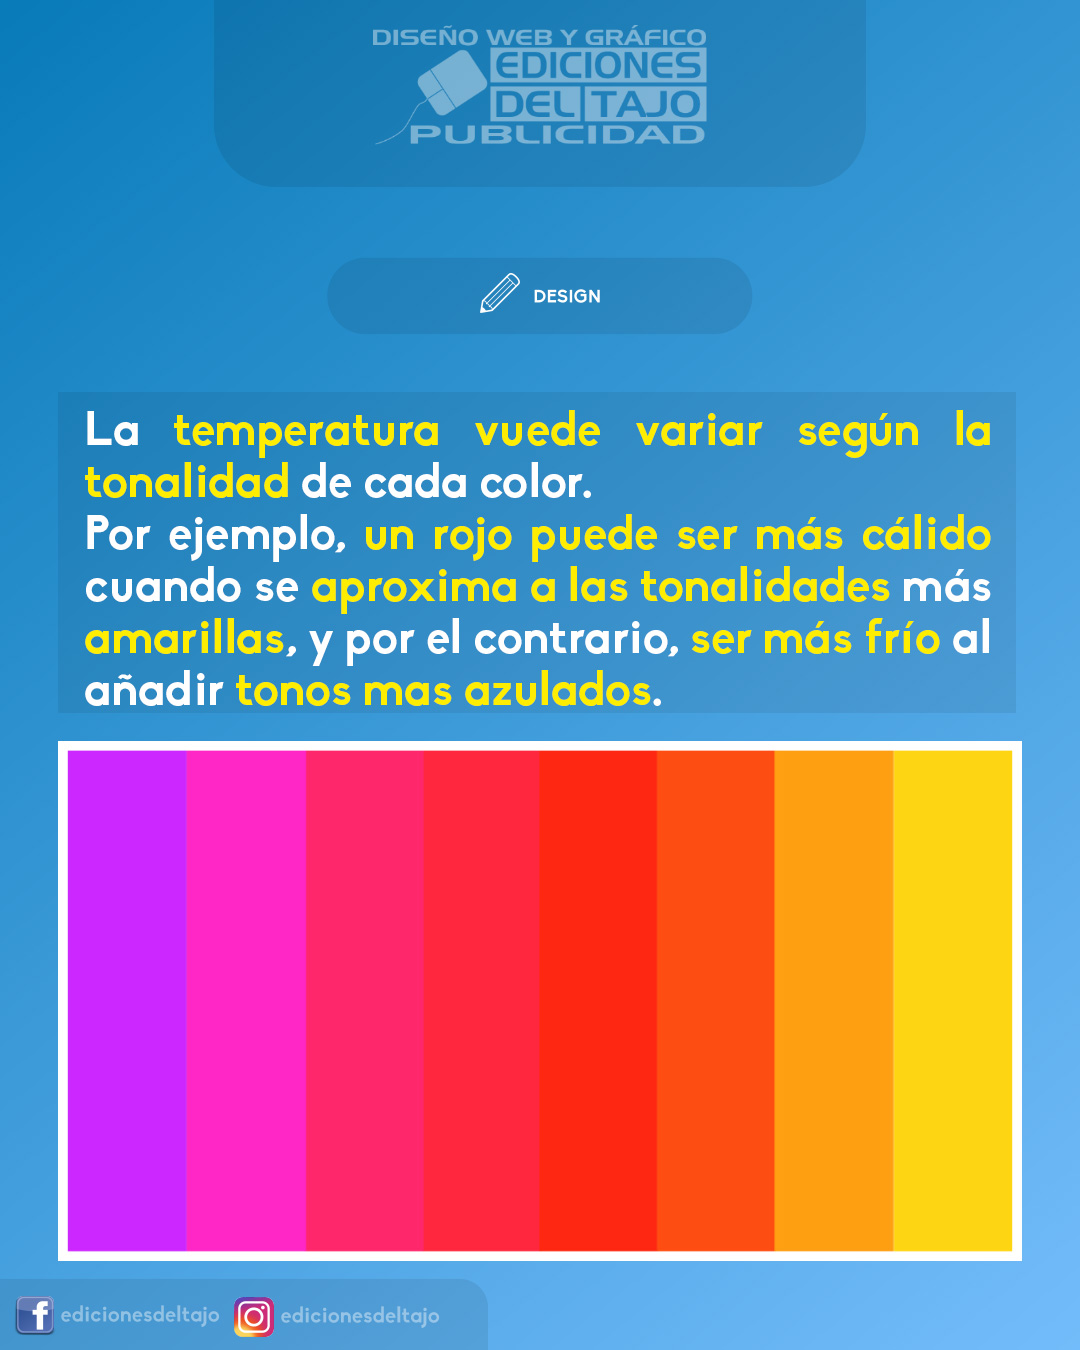 La temperatura de los colores